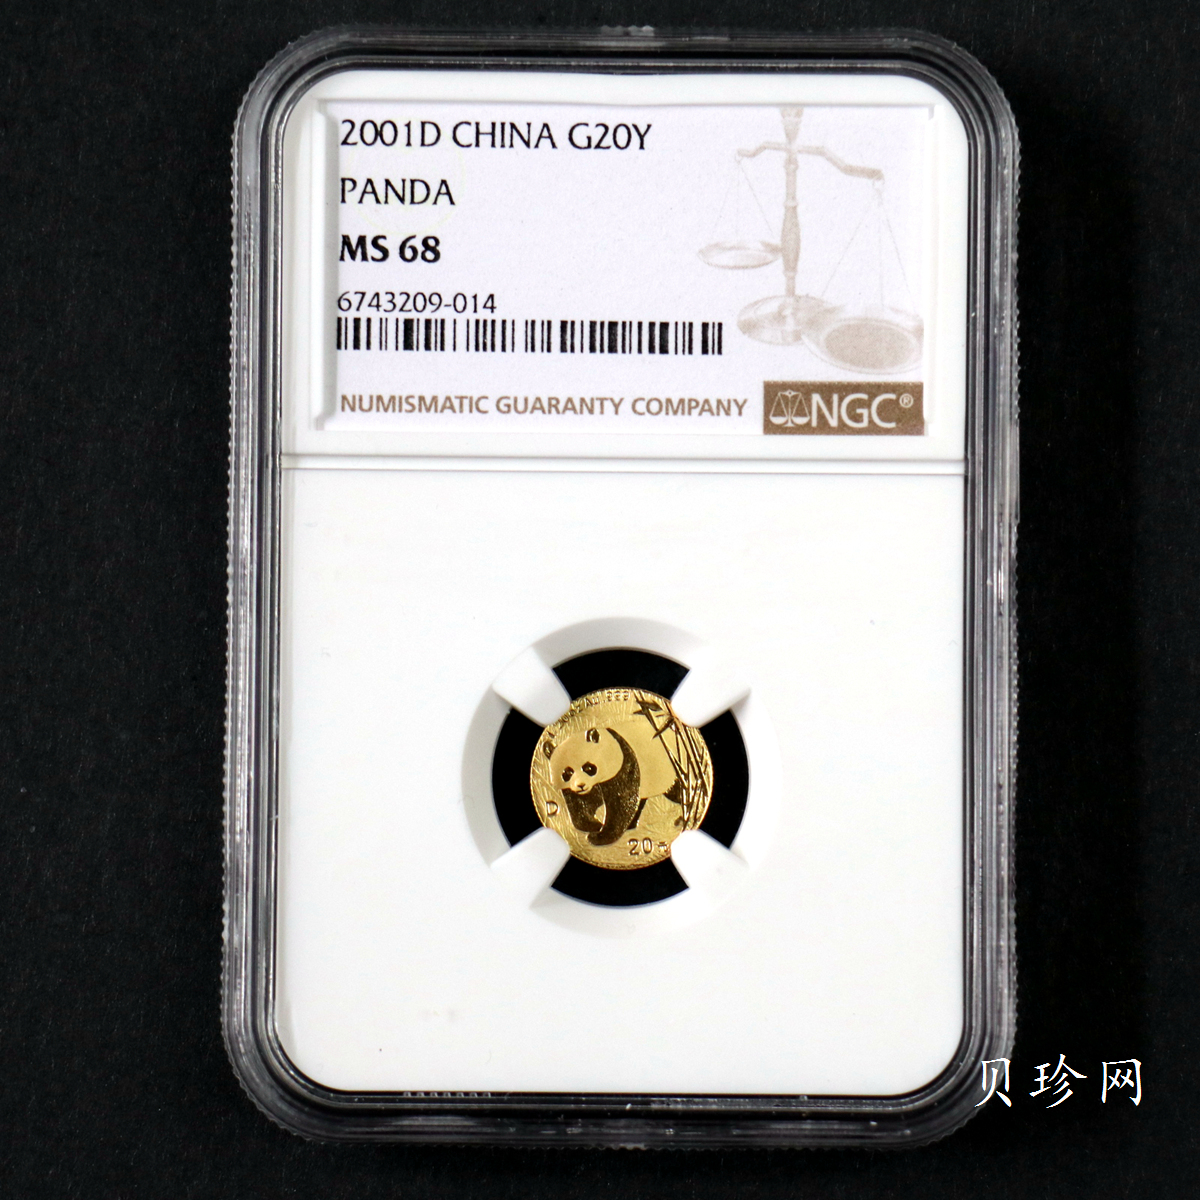 【010105】2001版熊猫金银纪念币1/20盎司普制金币